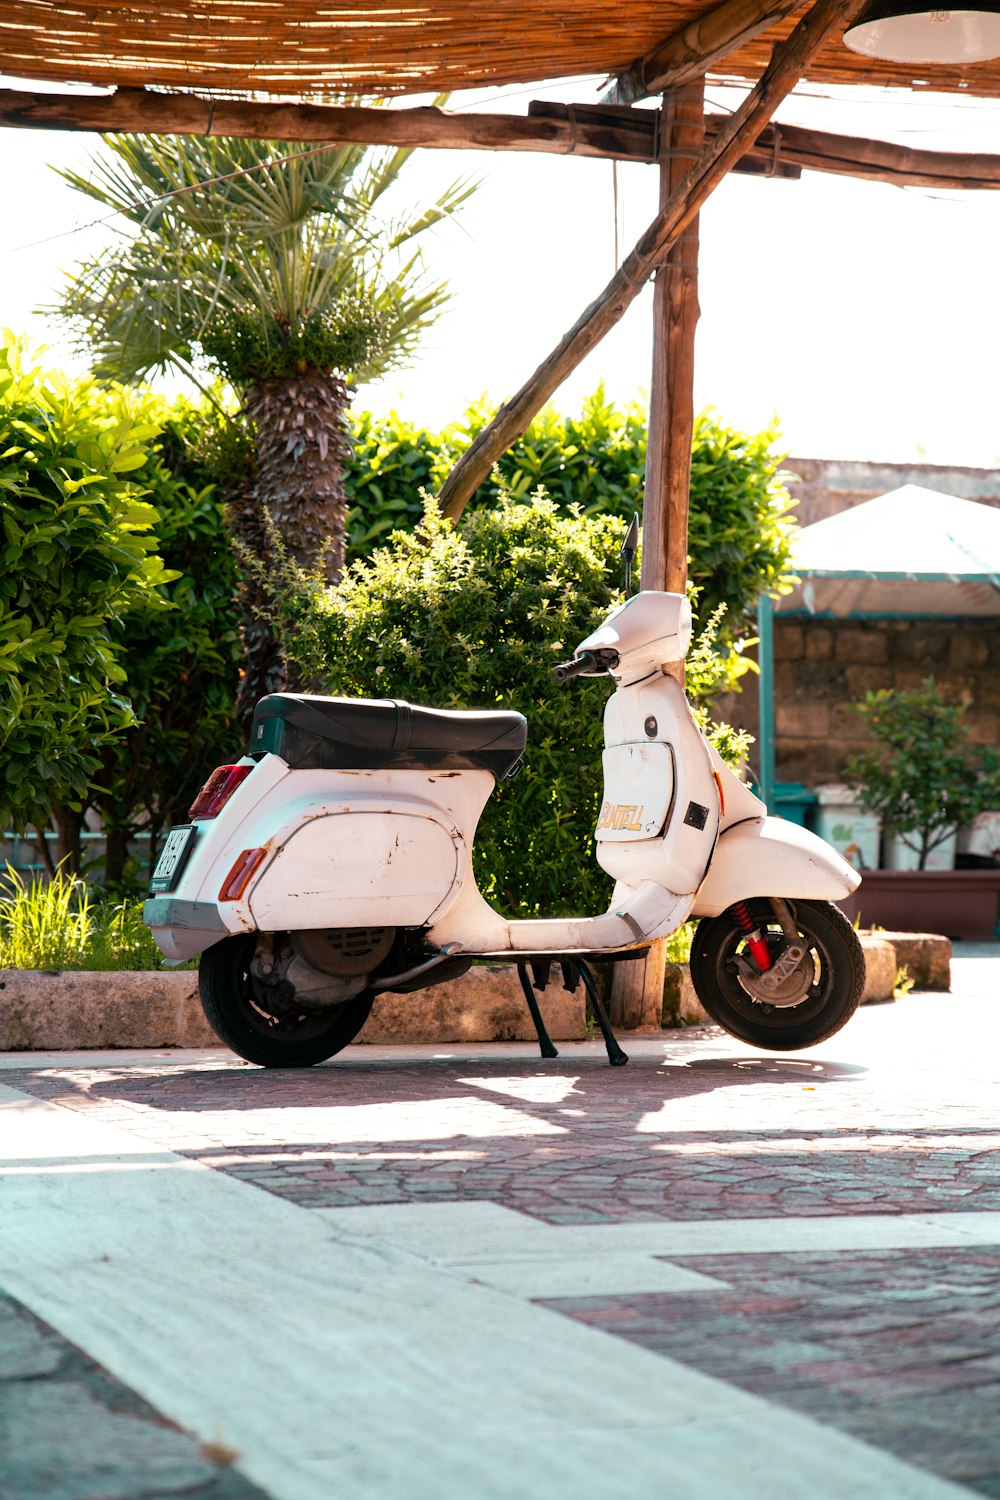 Un scooter blanco aparcado bajo una estructura de madera